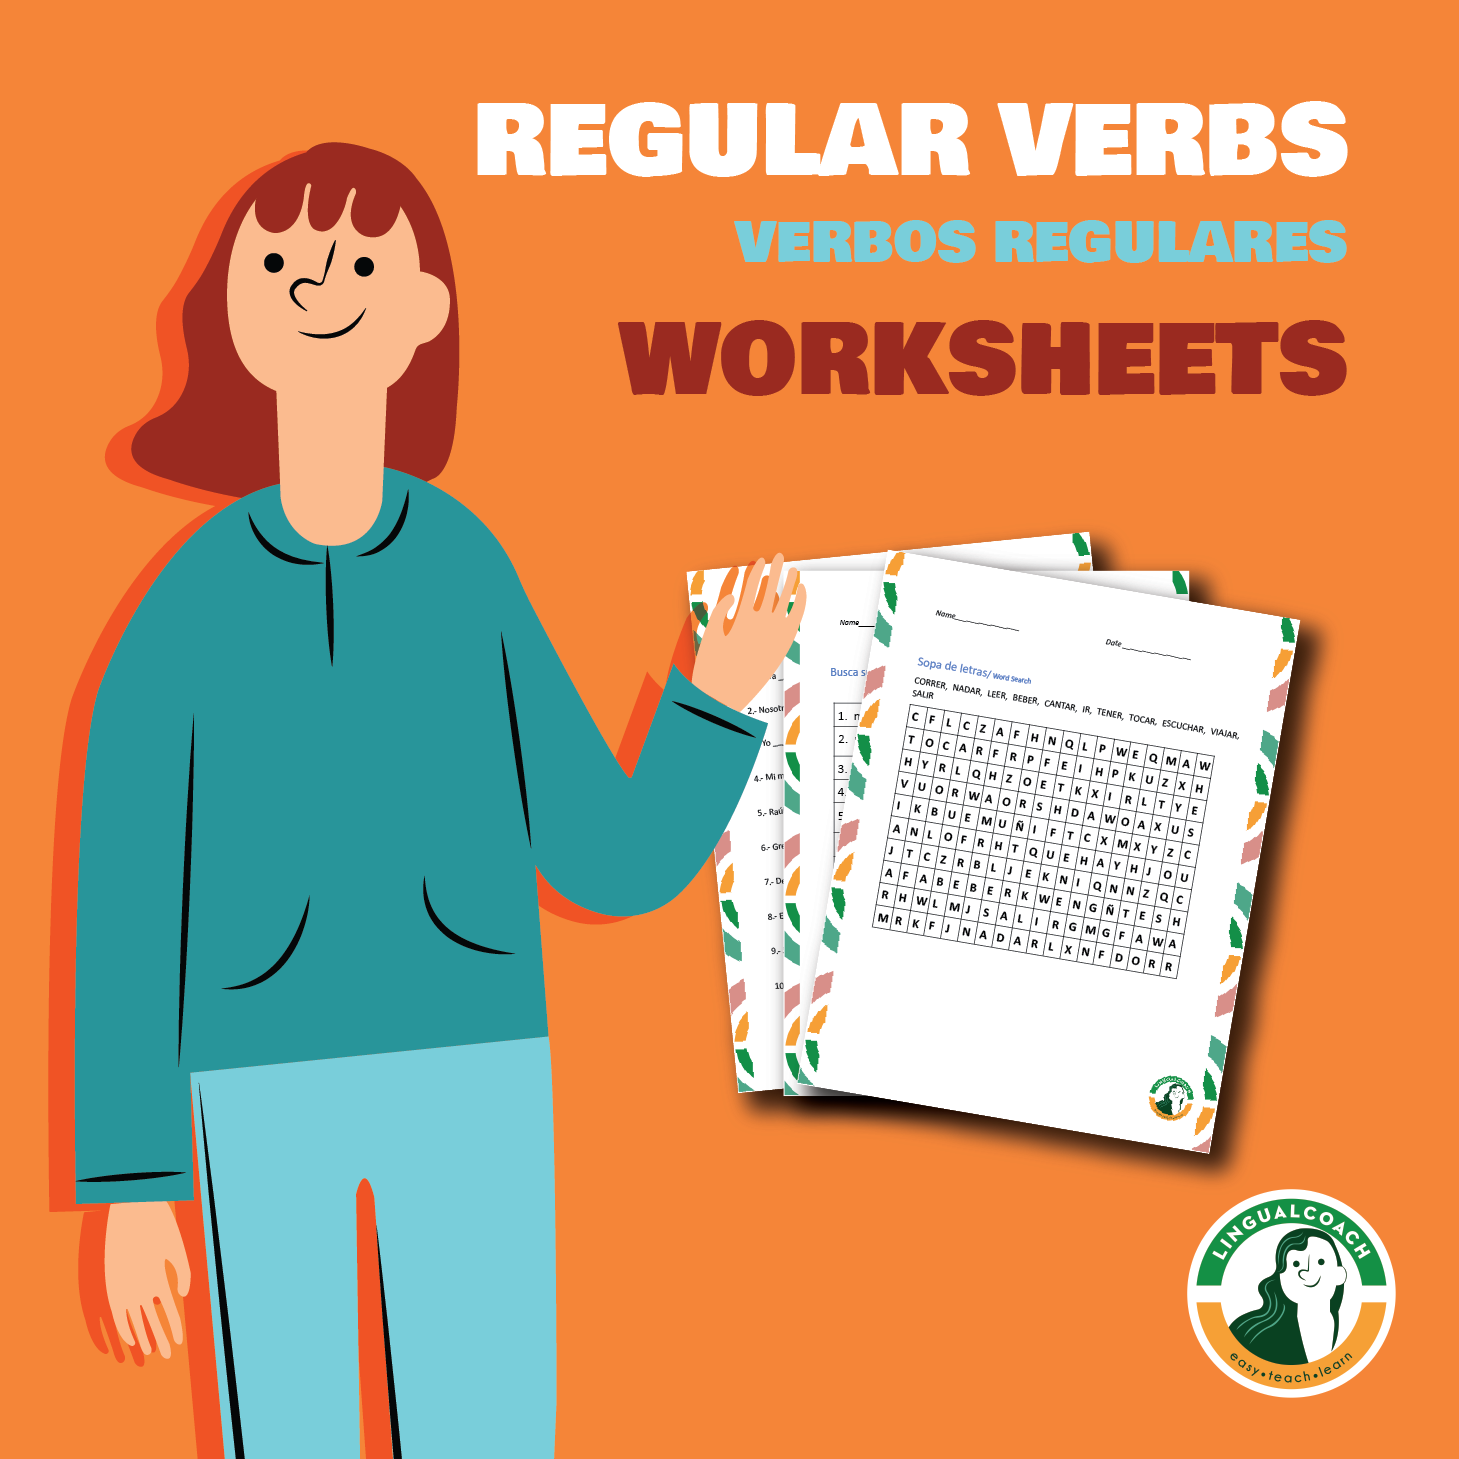 Spanish Regular Verbs Worksheets (Verbos Regulares)